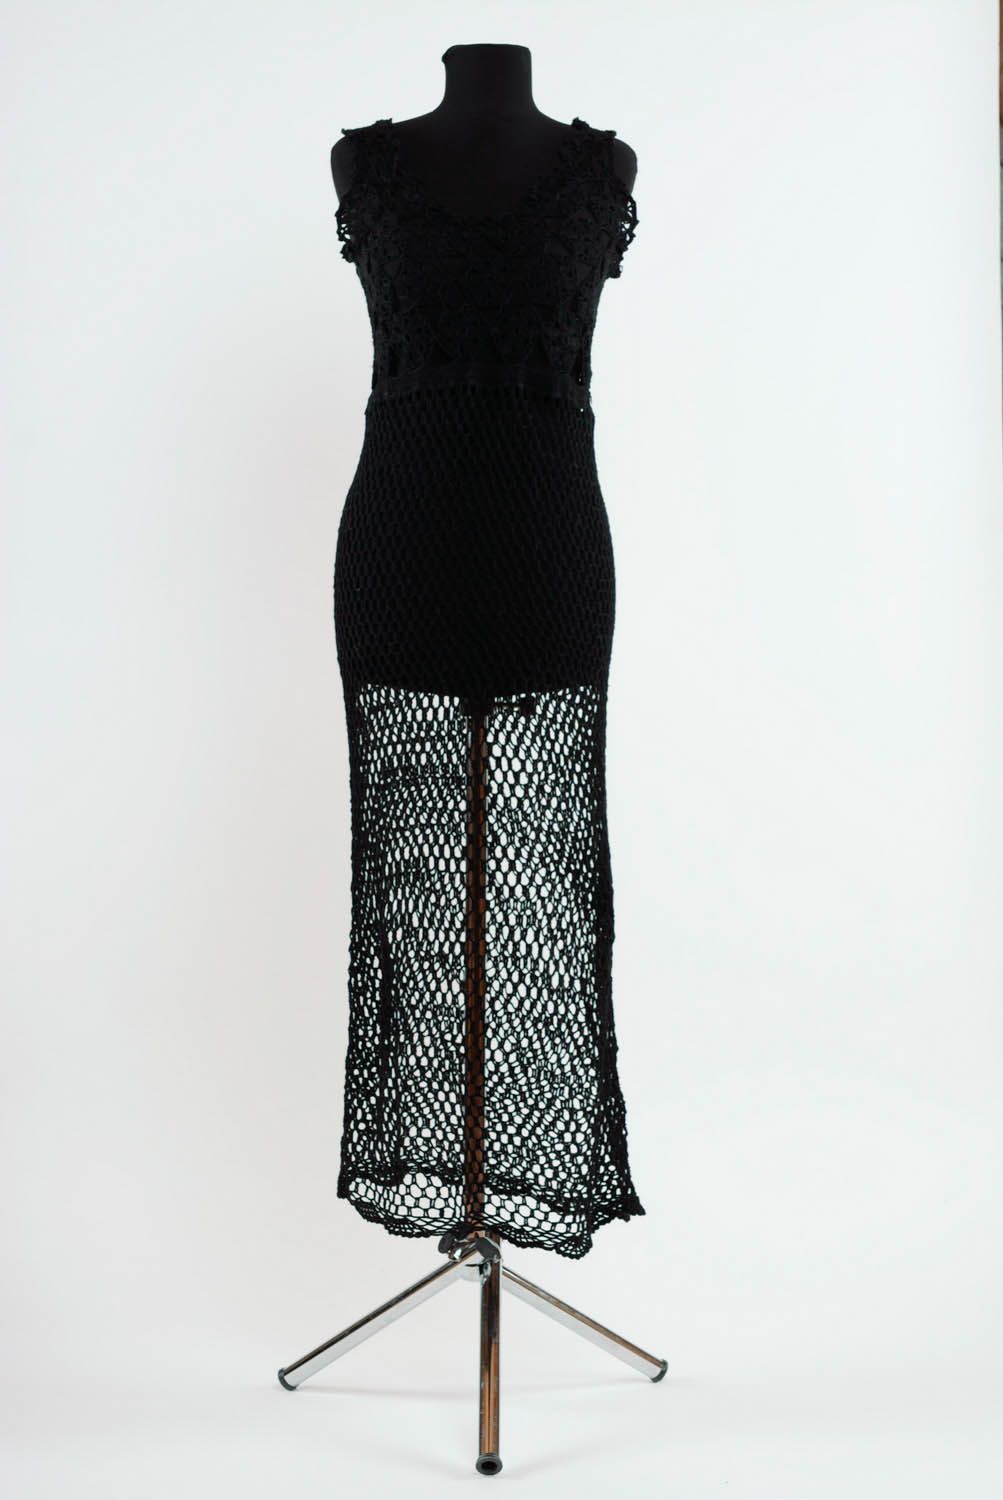 Robe noire en coton tricotée au crochet photo 1